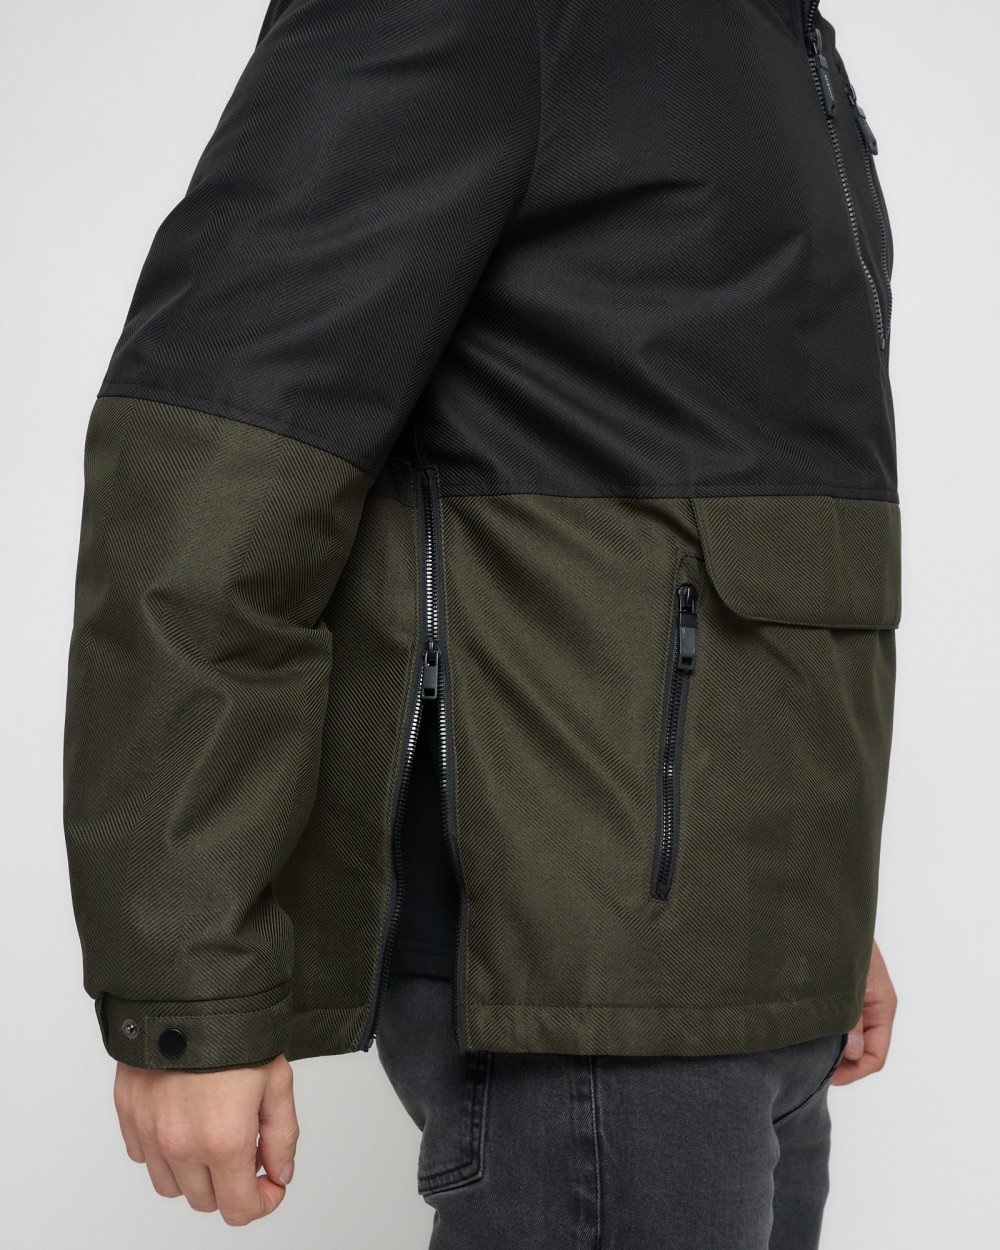 Купить куртку анорак спортивную мужскую оптом от производителя недорого в Москве 3307Ch 1